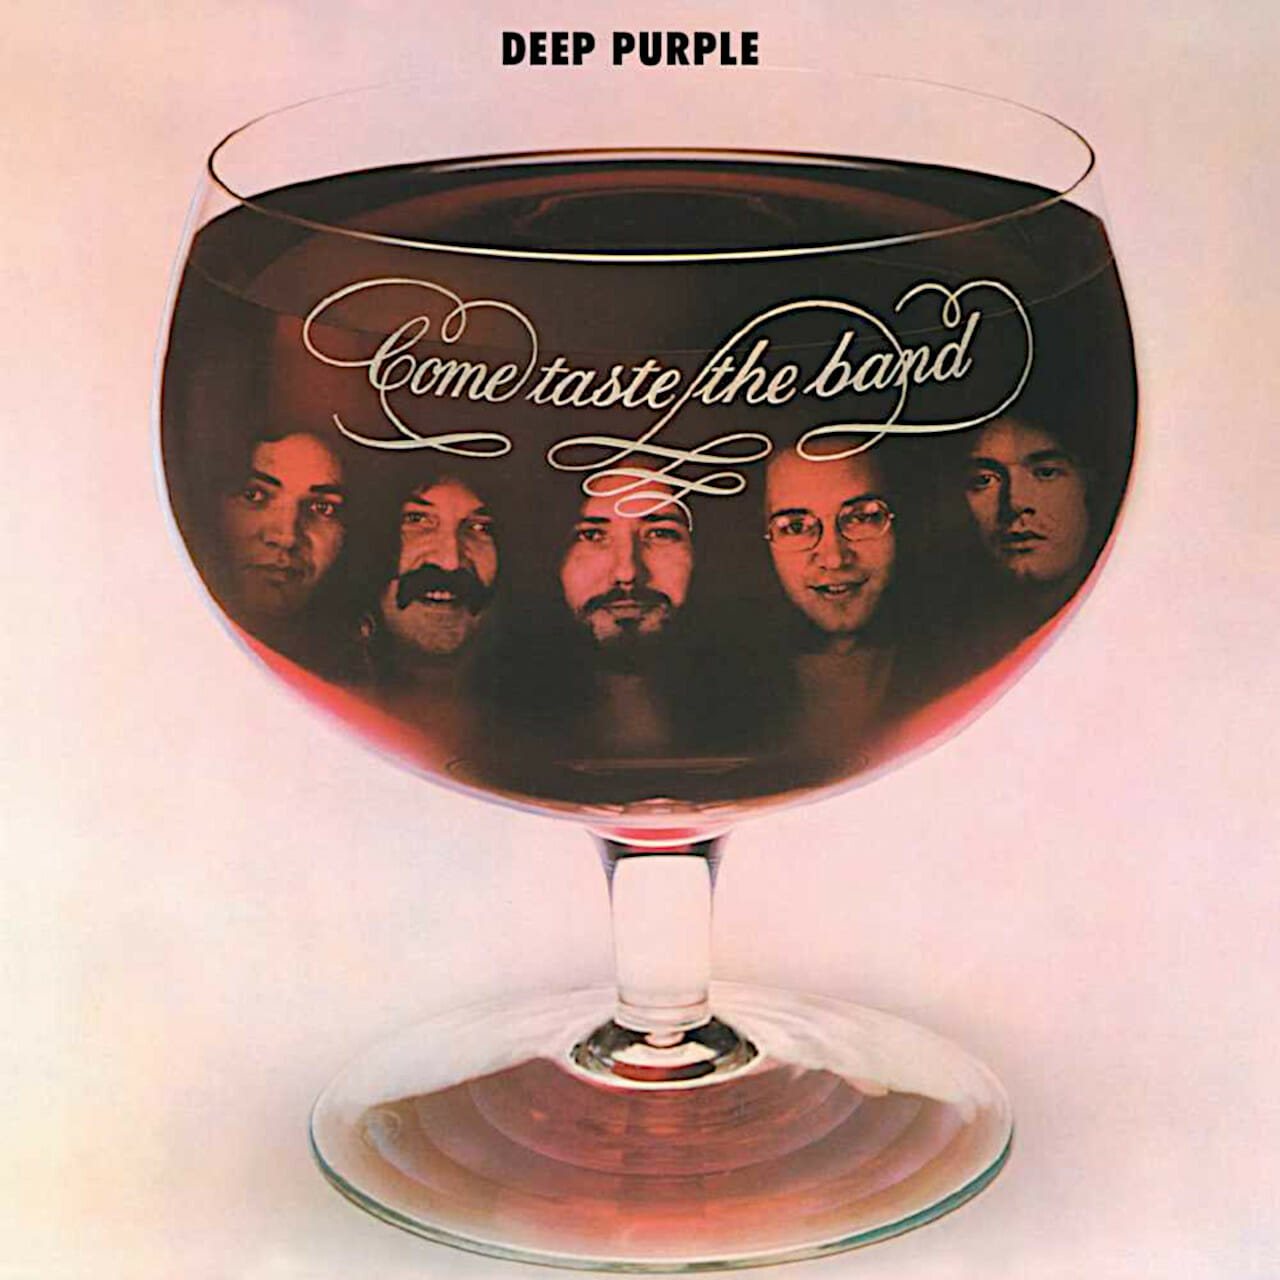 Deep Purple Ven a probar la banda